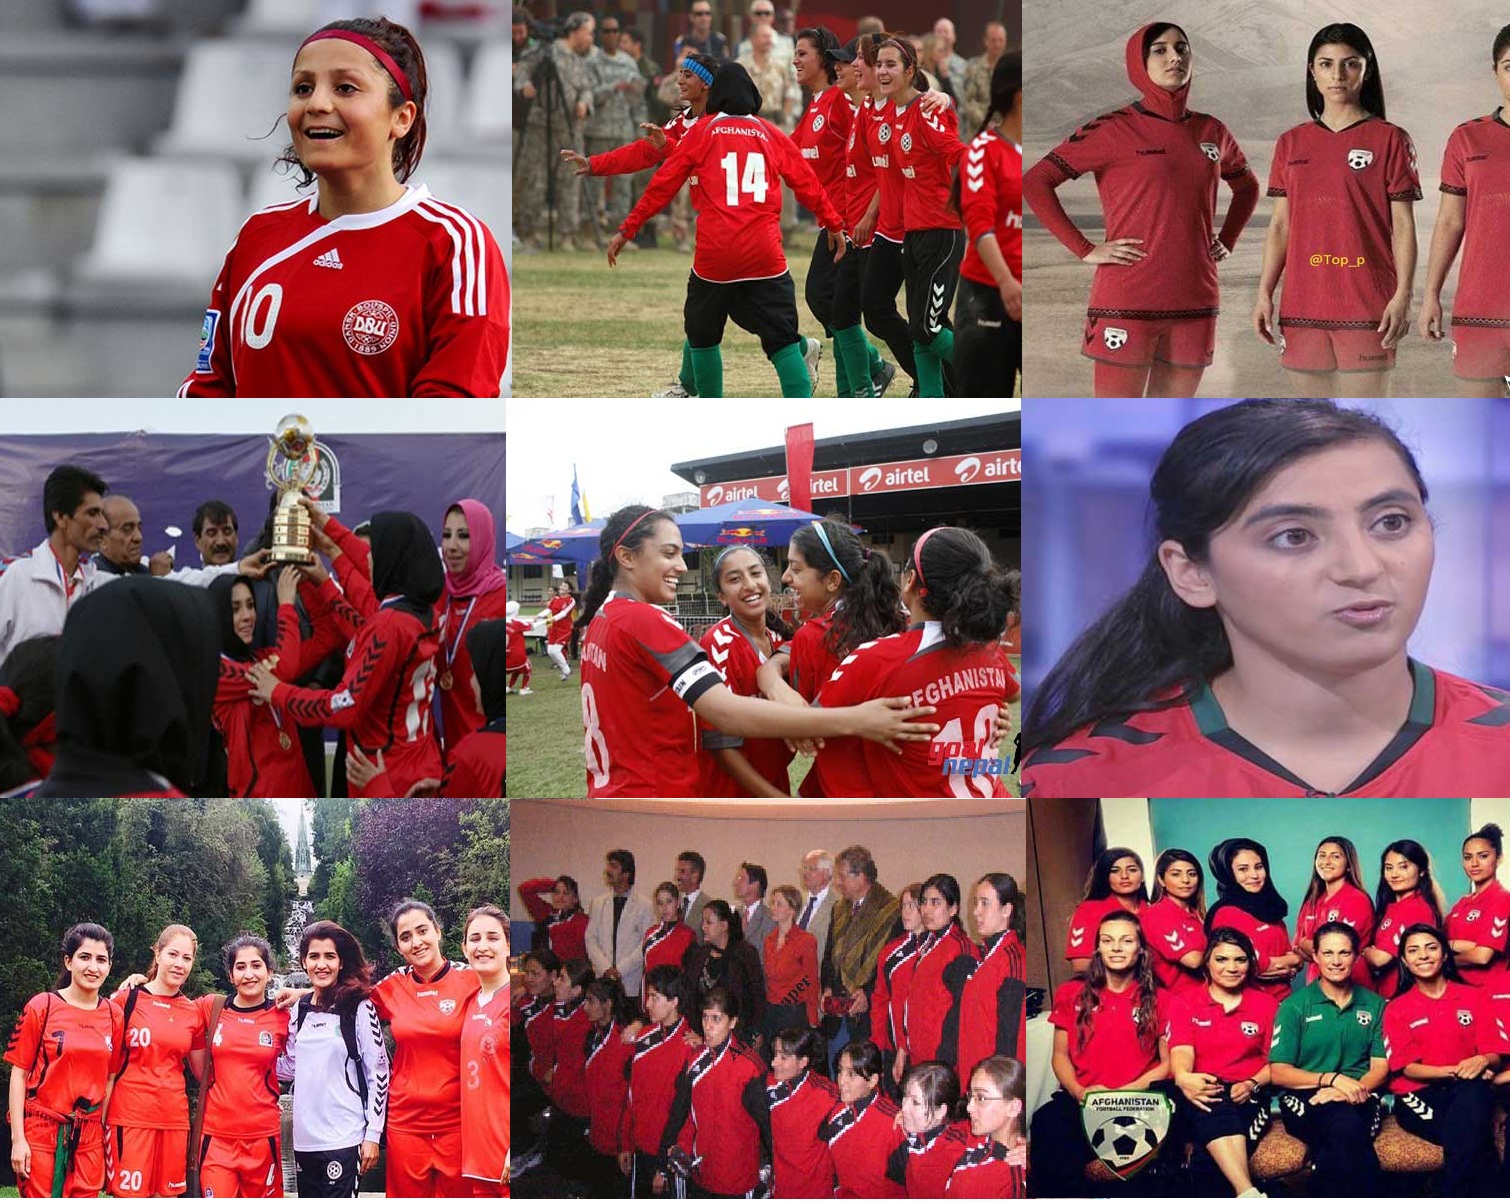 چرا باید تیم فوتبال زنان را تعطیل کرد؟!